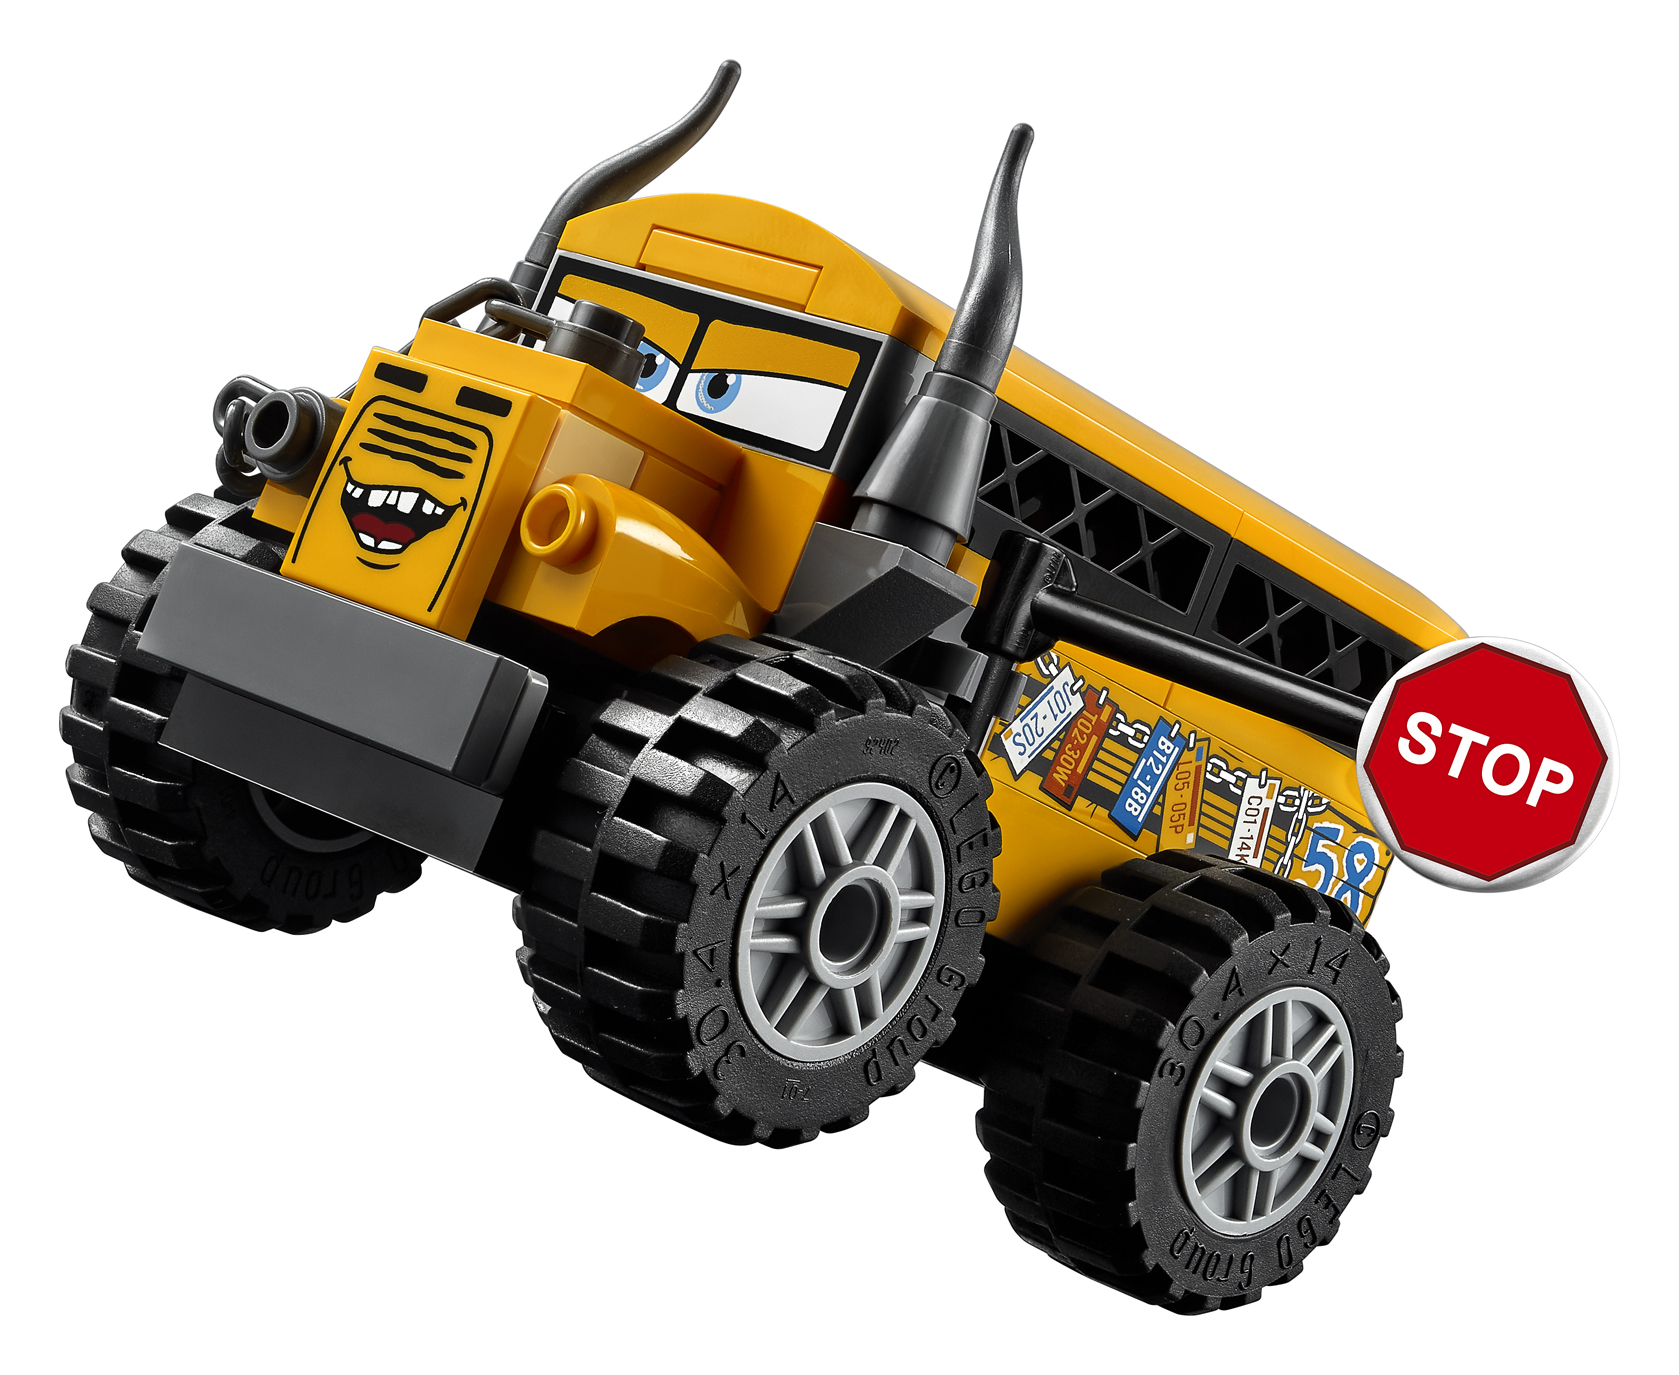 LEGO Reveals Cars 3 Juniors Sets - FBTB